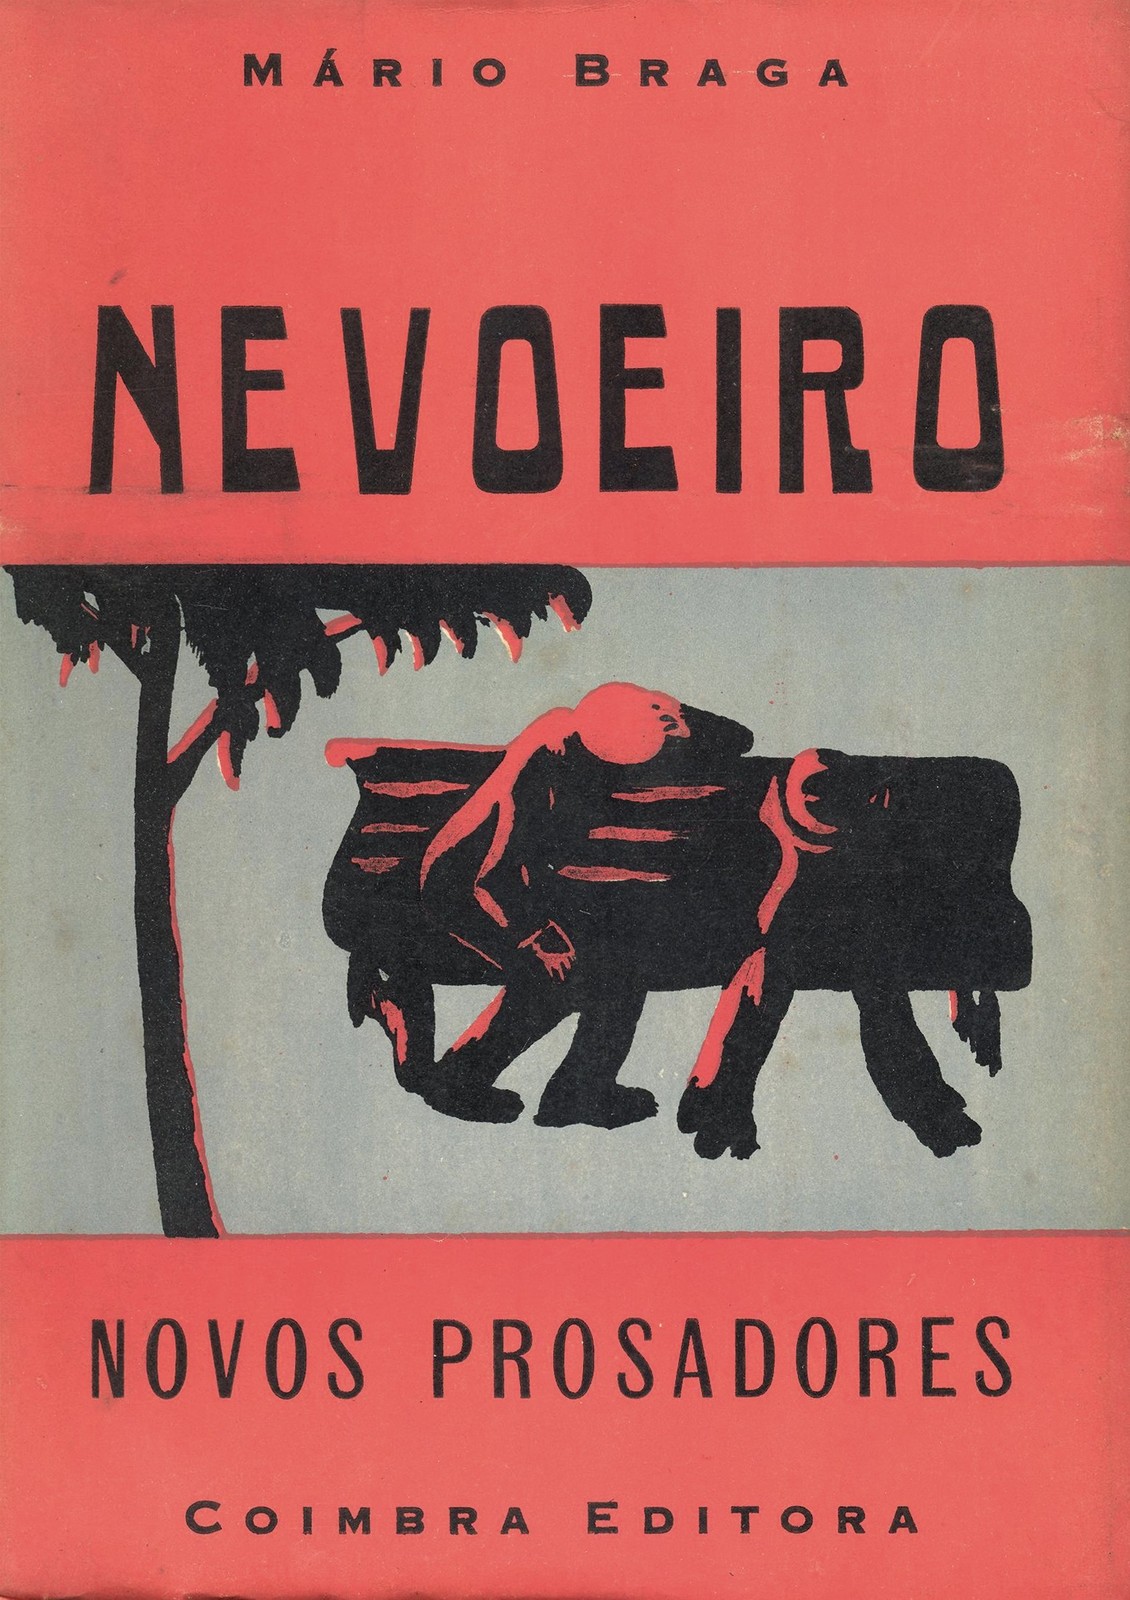 'Nevoeiro' por Mário Braga, Coleção Novos Prosadores, Coimbra Editora, 1944